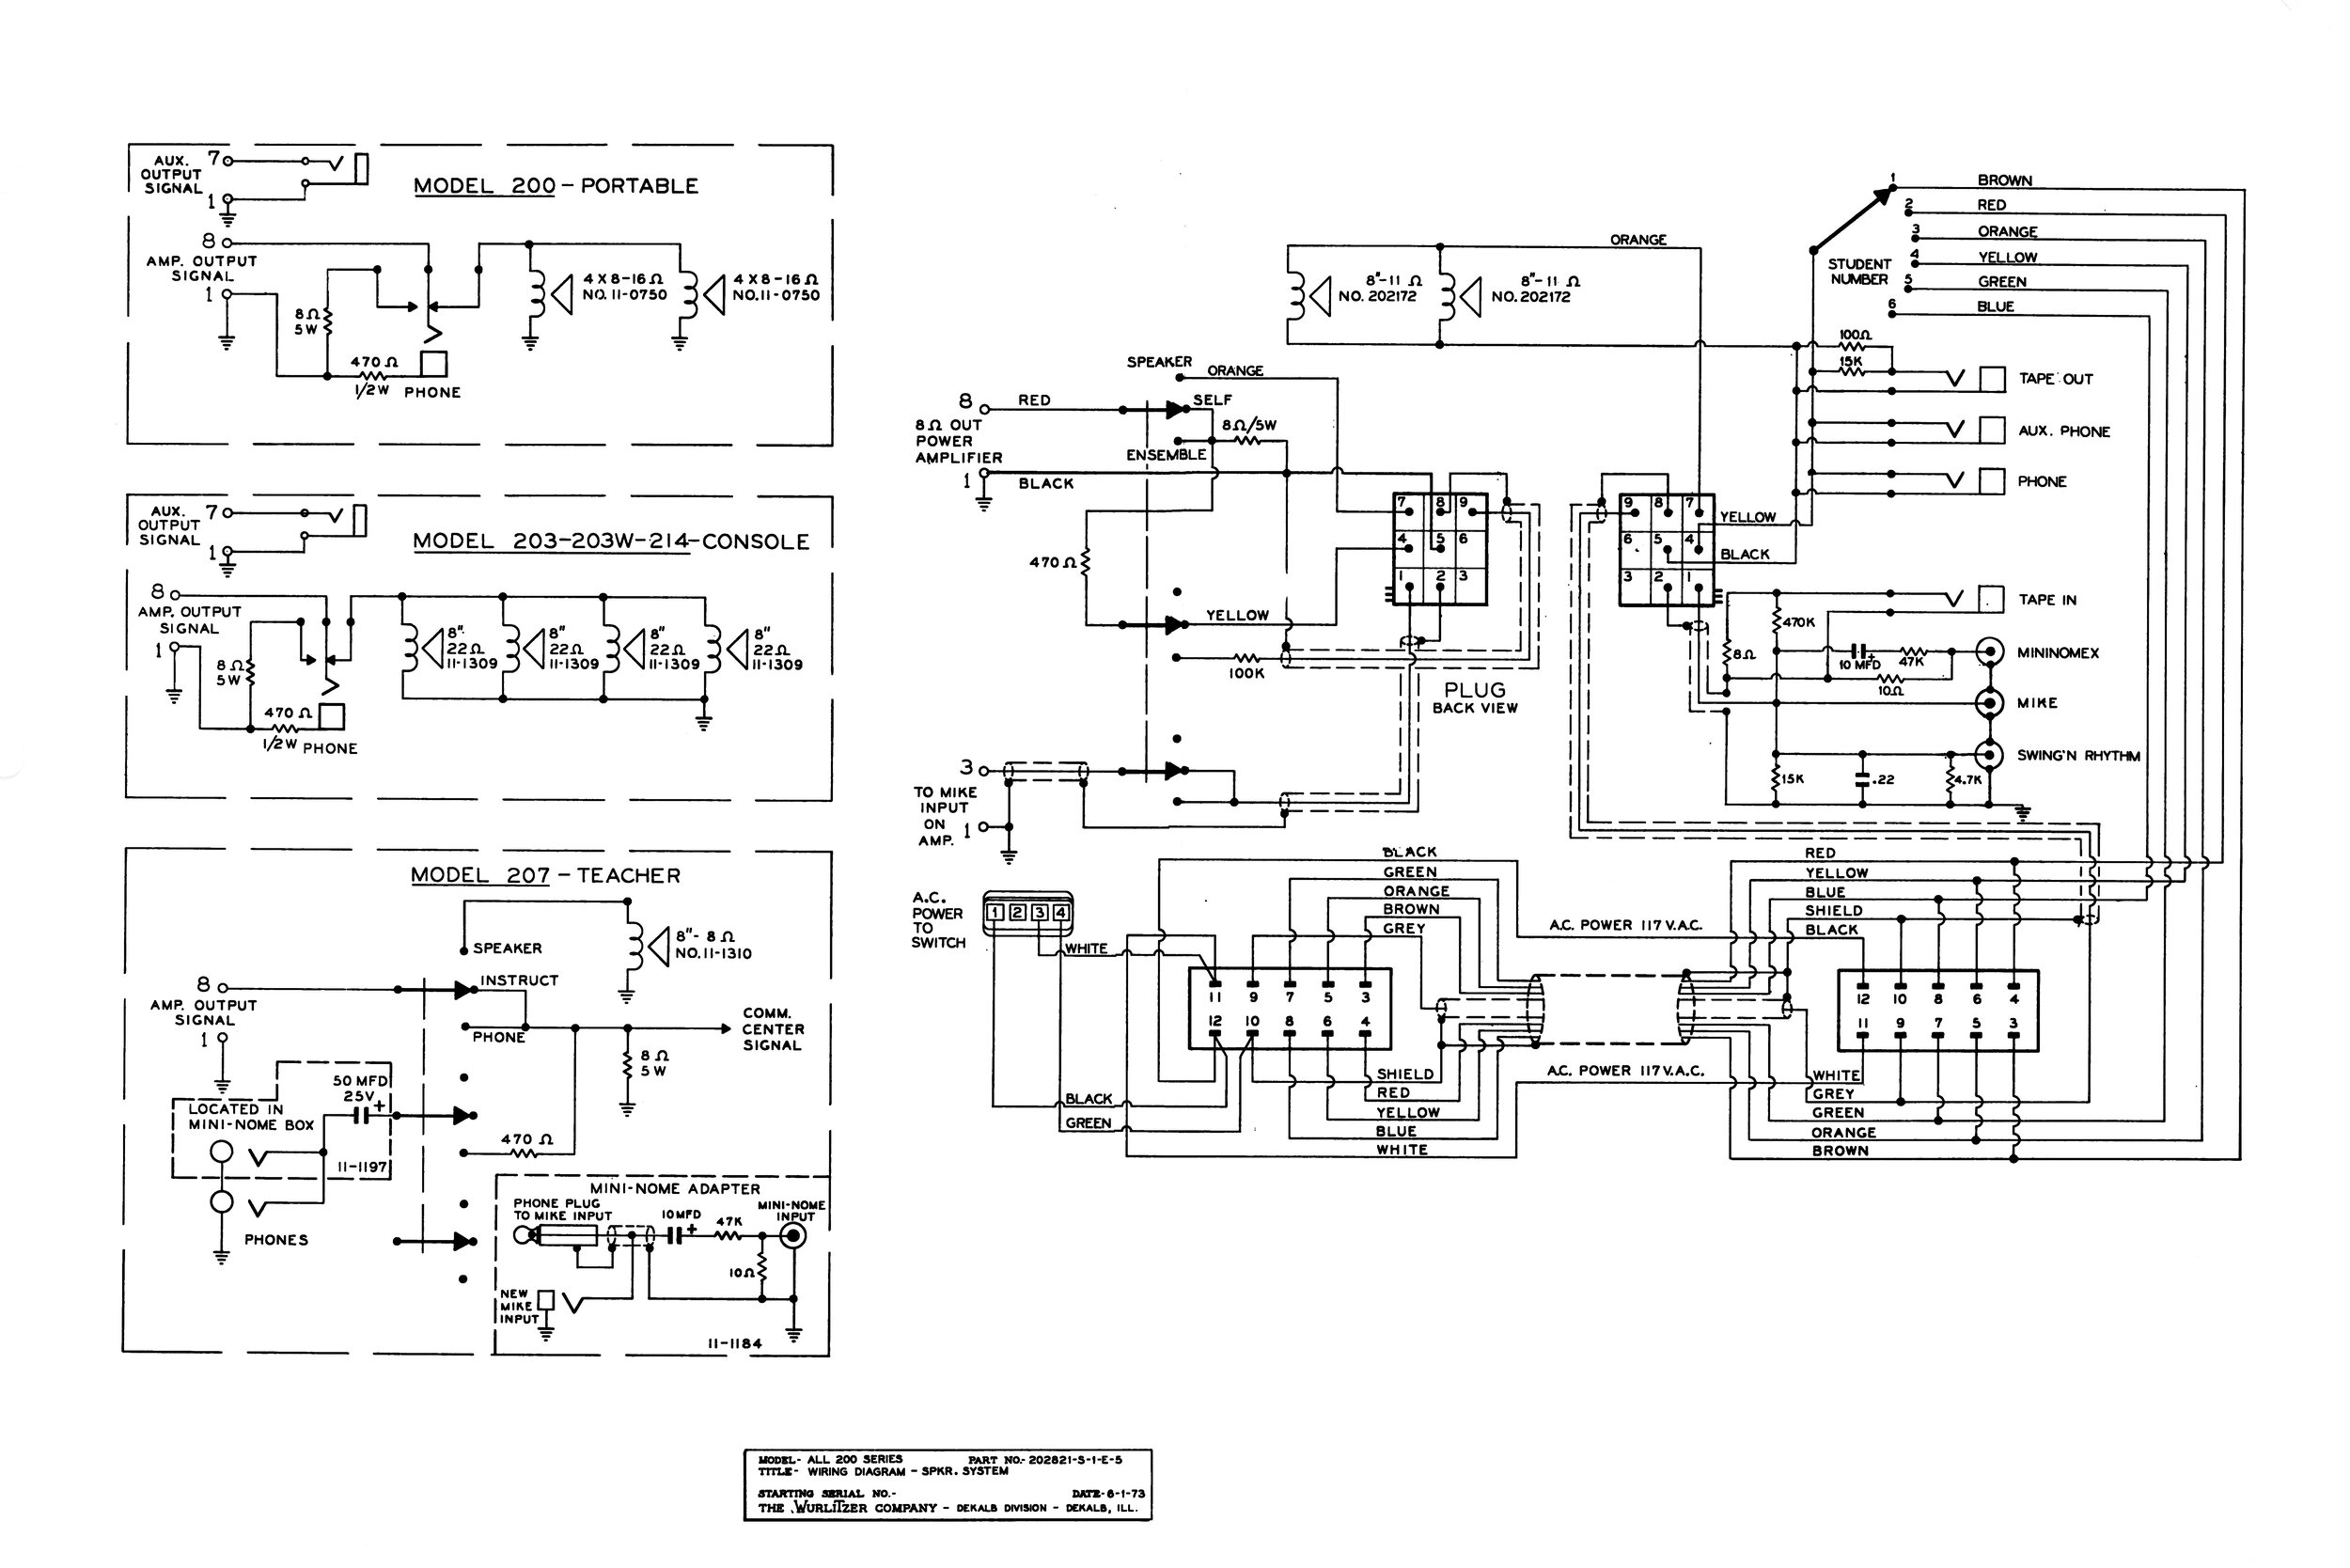 Wurlitzer 200 output connections schematic